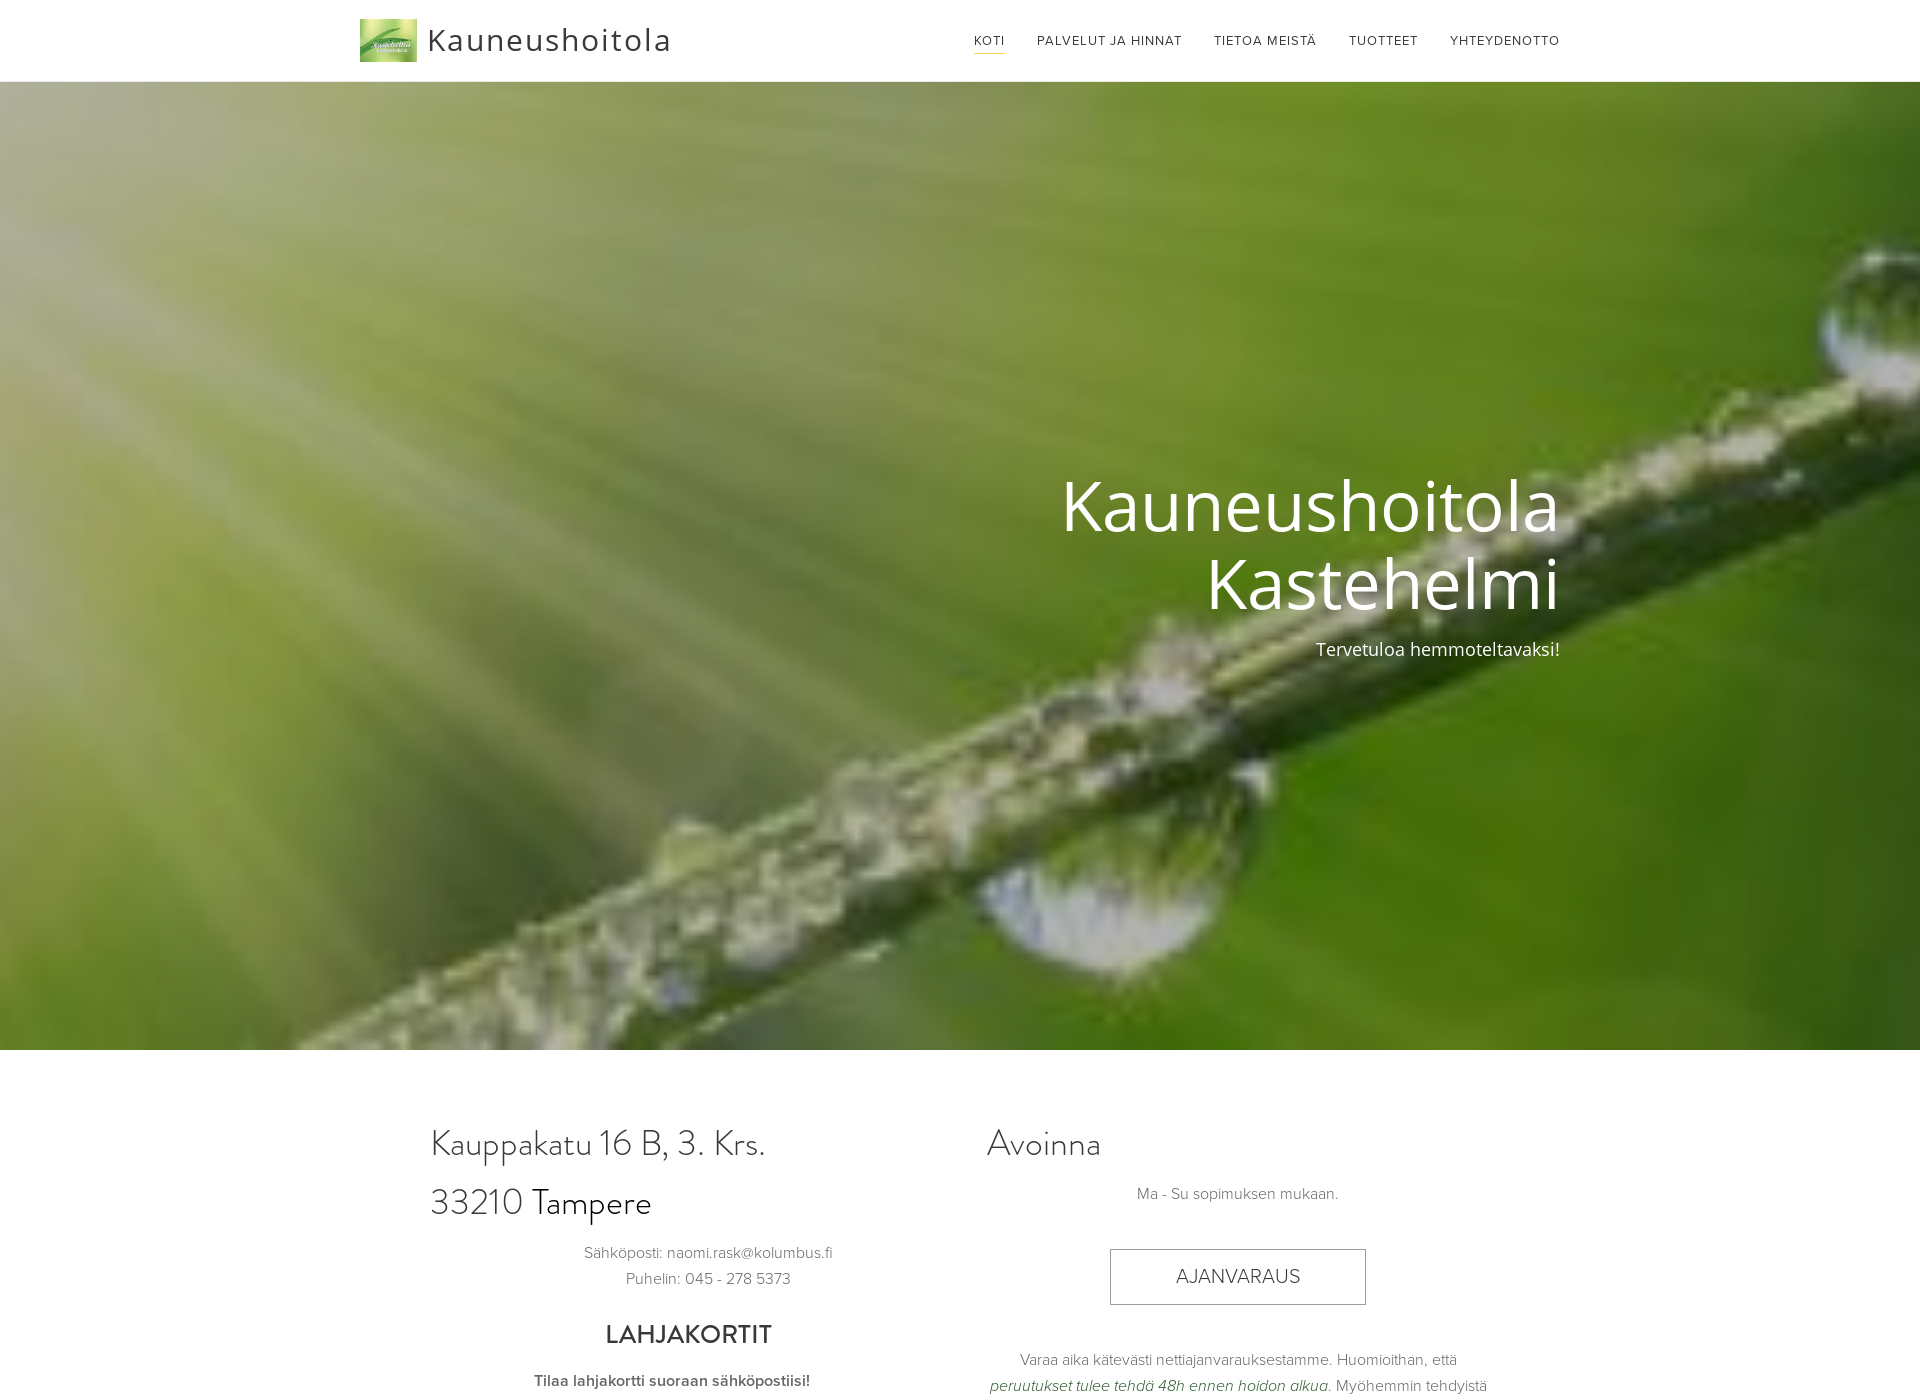 Screenshot for kauneushoitolakastehelmi.fi